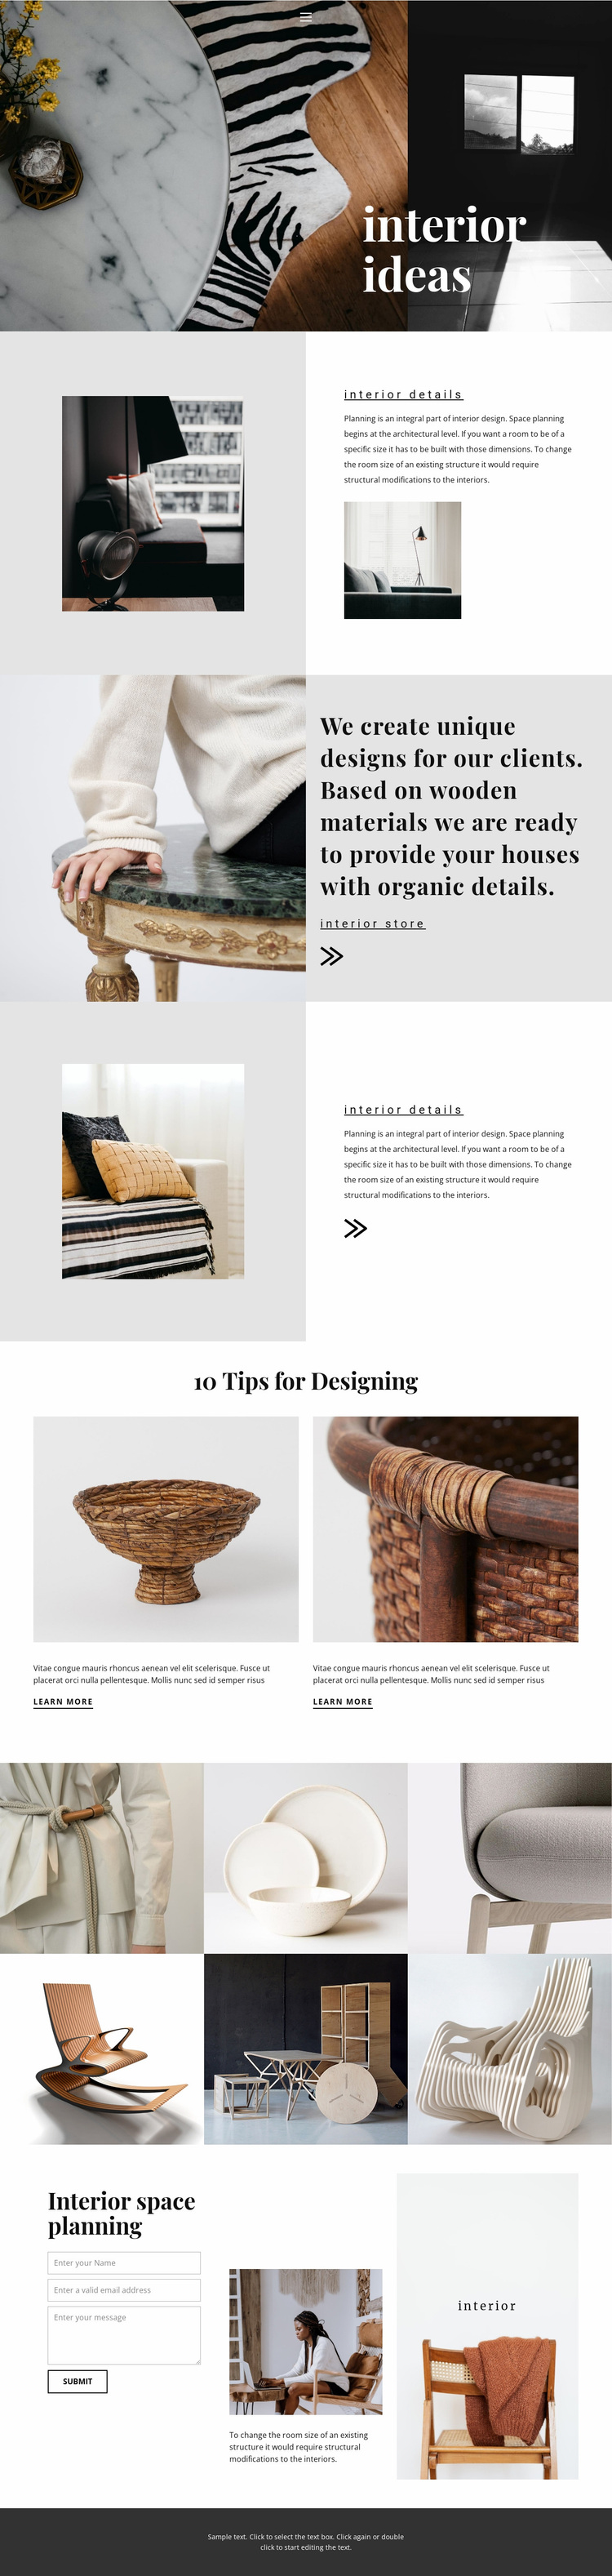 New interior ideas Website Design